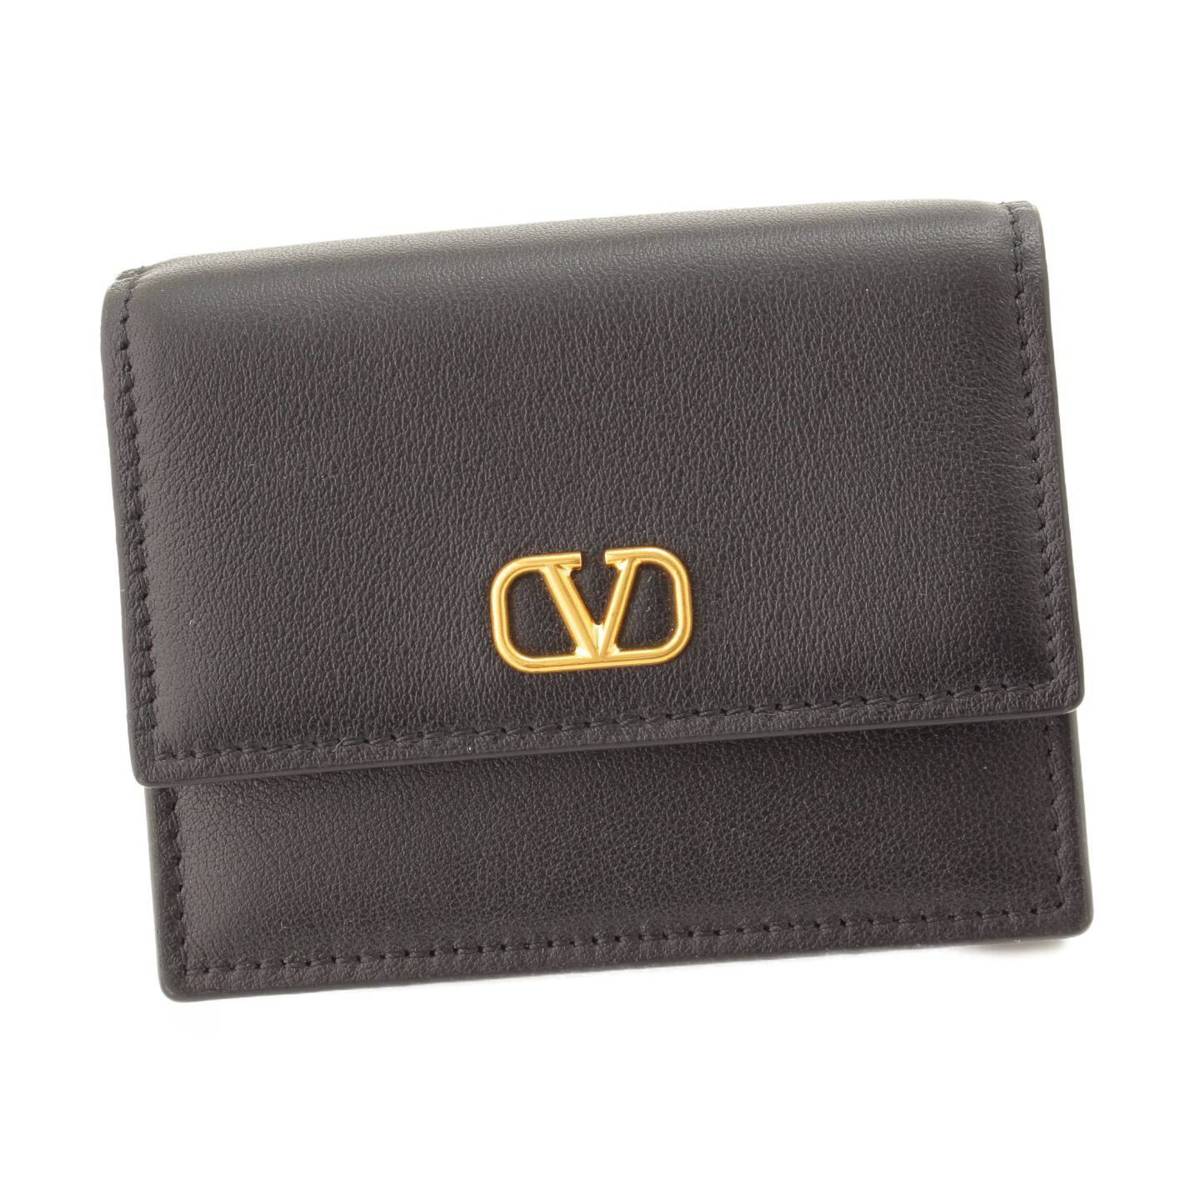 ヴァレンティノ(Valentino) ロックスタッズ レザー 二つ折り財布 